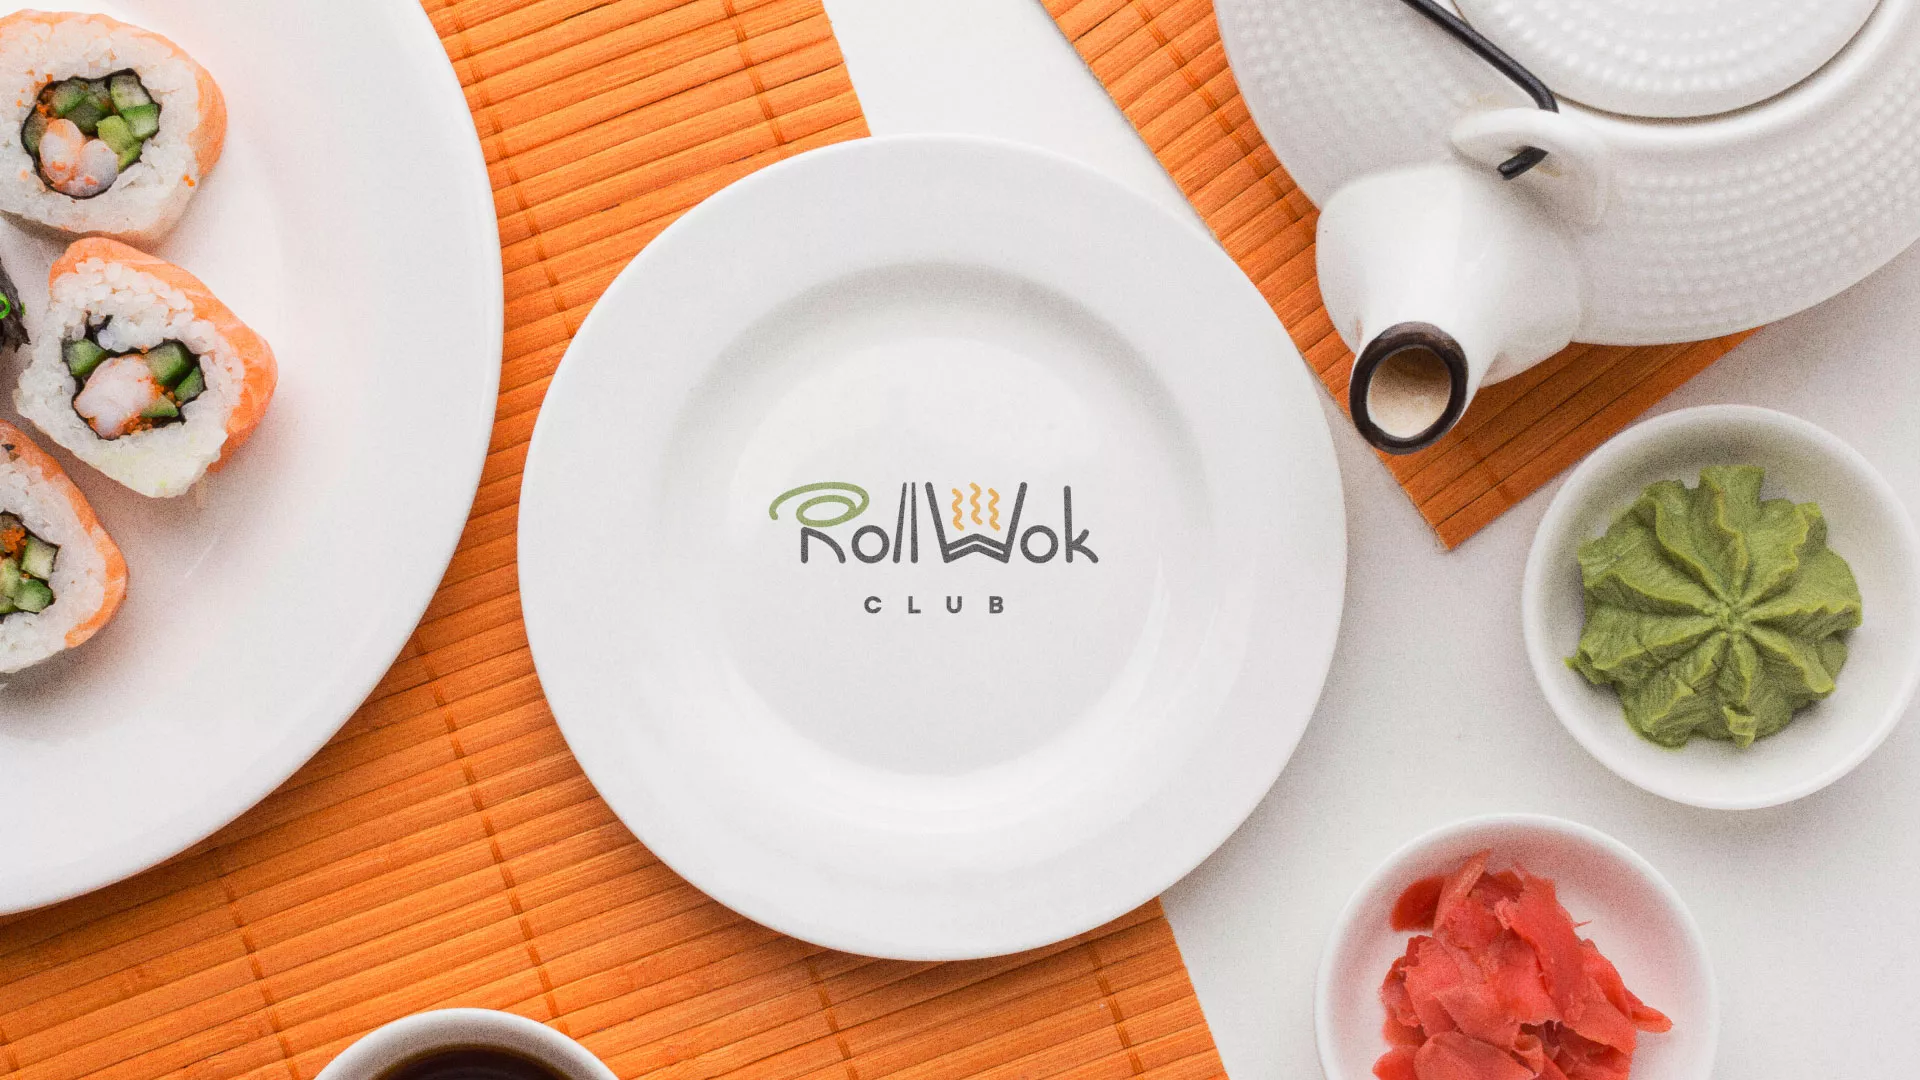 Разработка логотипа и фирменного стиля суши-бара «Roll Wok Club» в Усолье